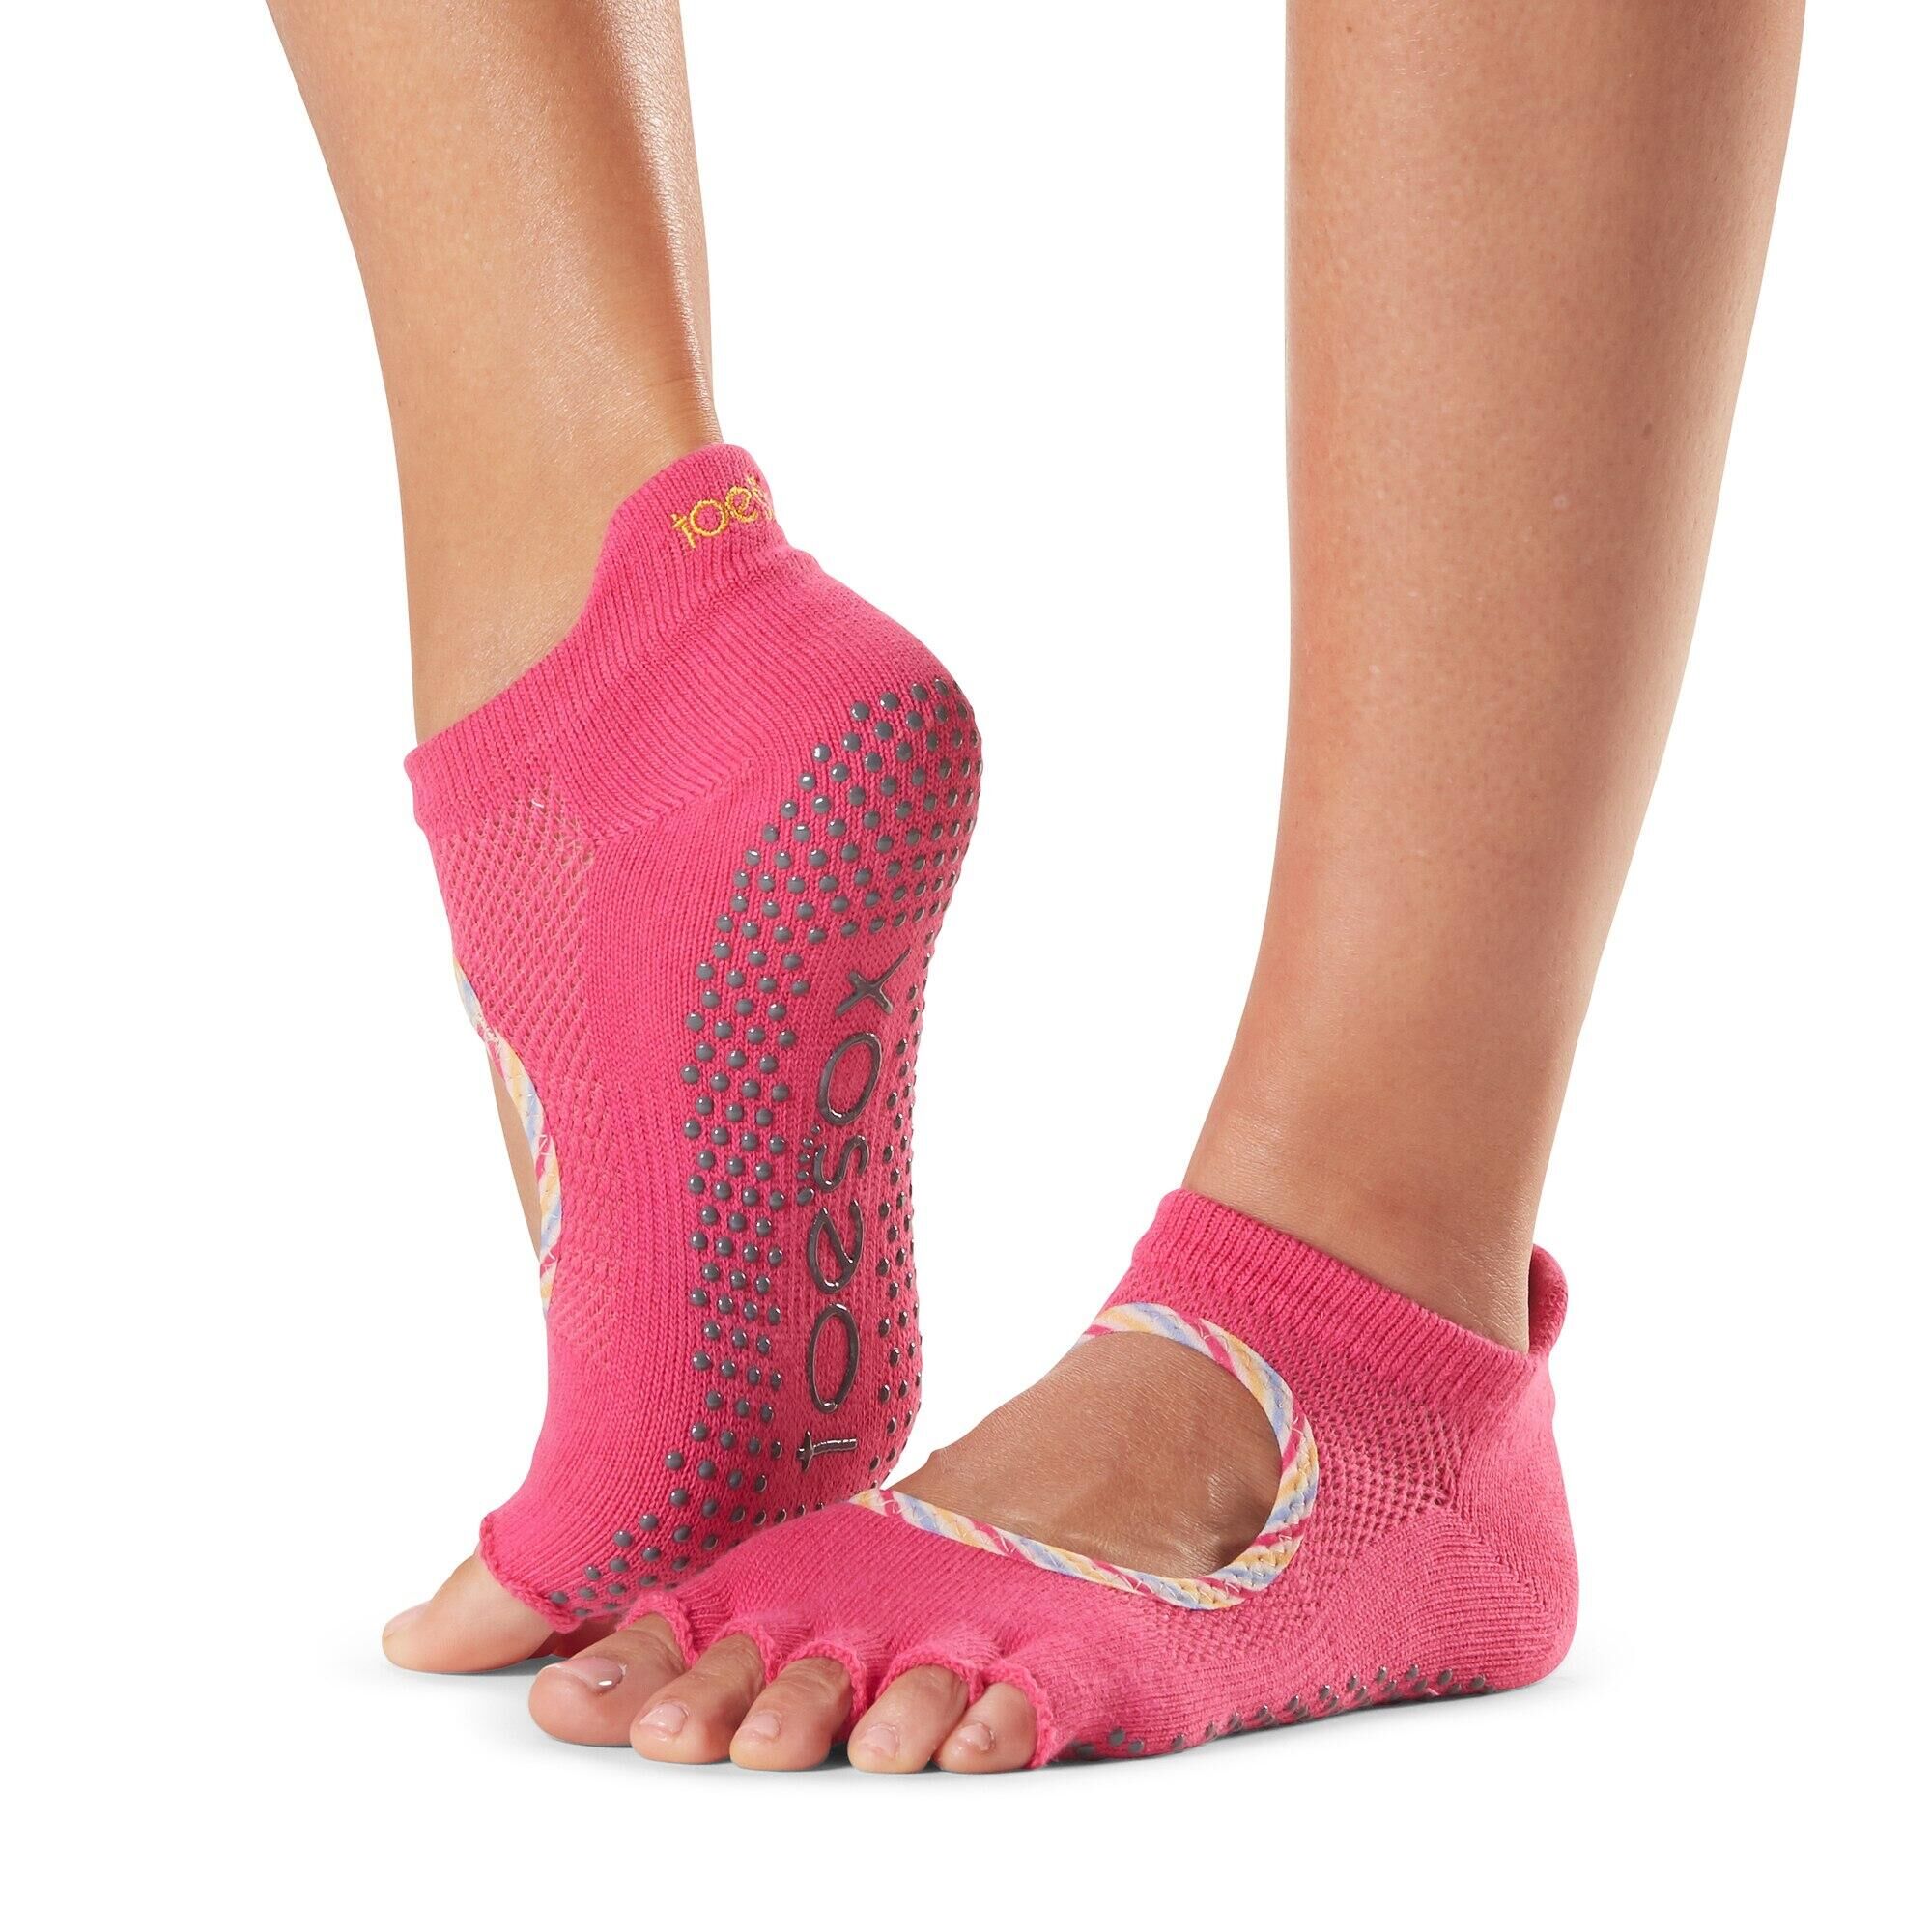 FITNESS-MAD Womens/Ladies Bellarina Jetset Half Toe Socks (Pink)